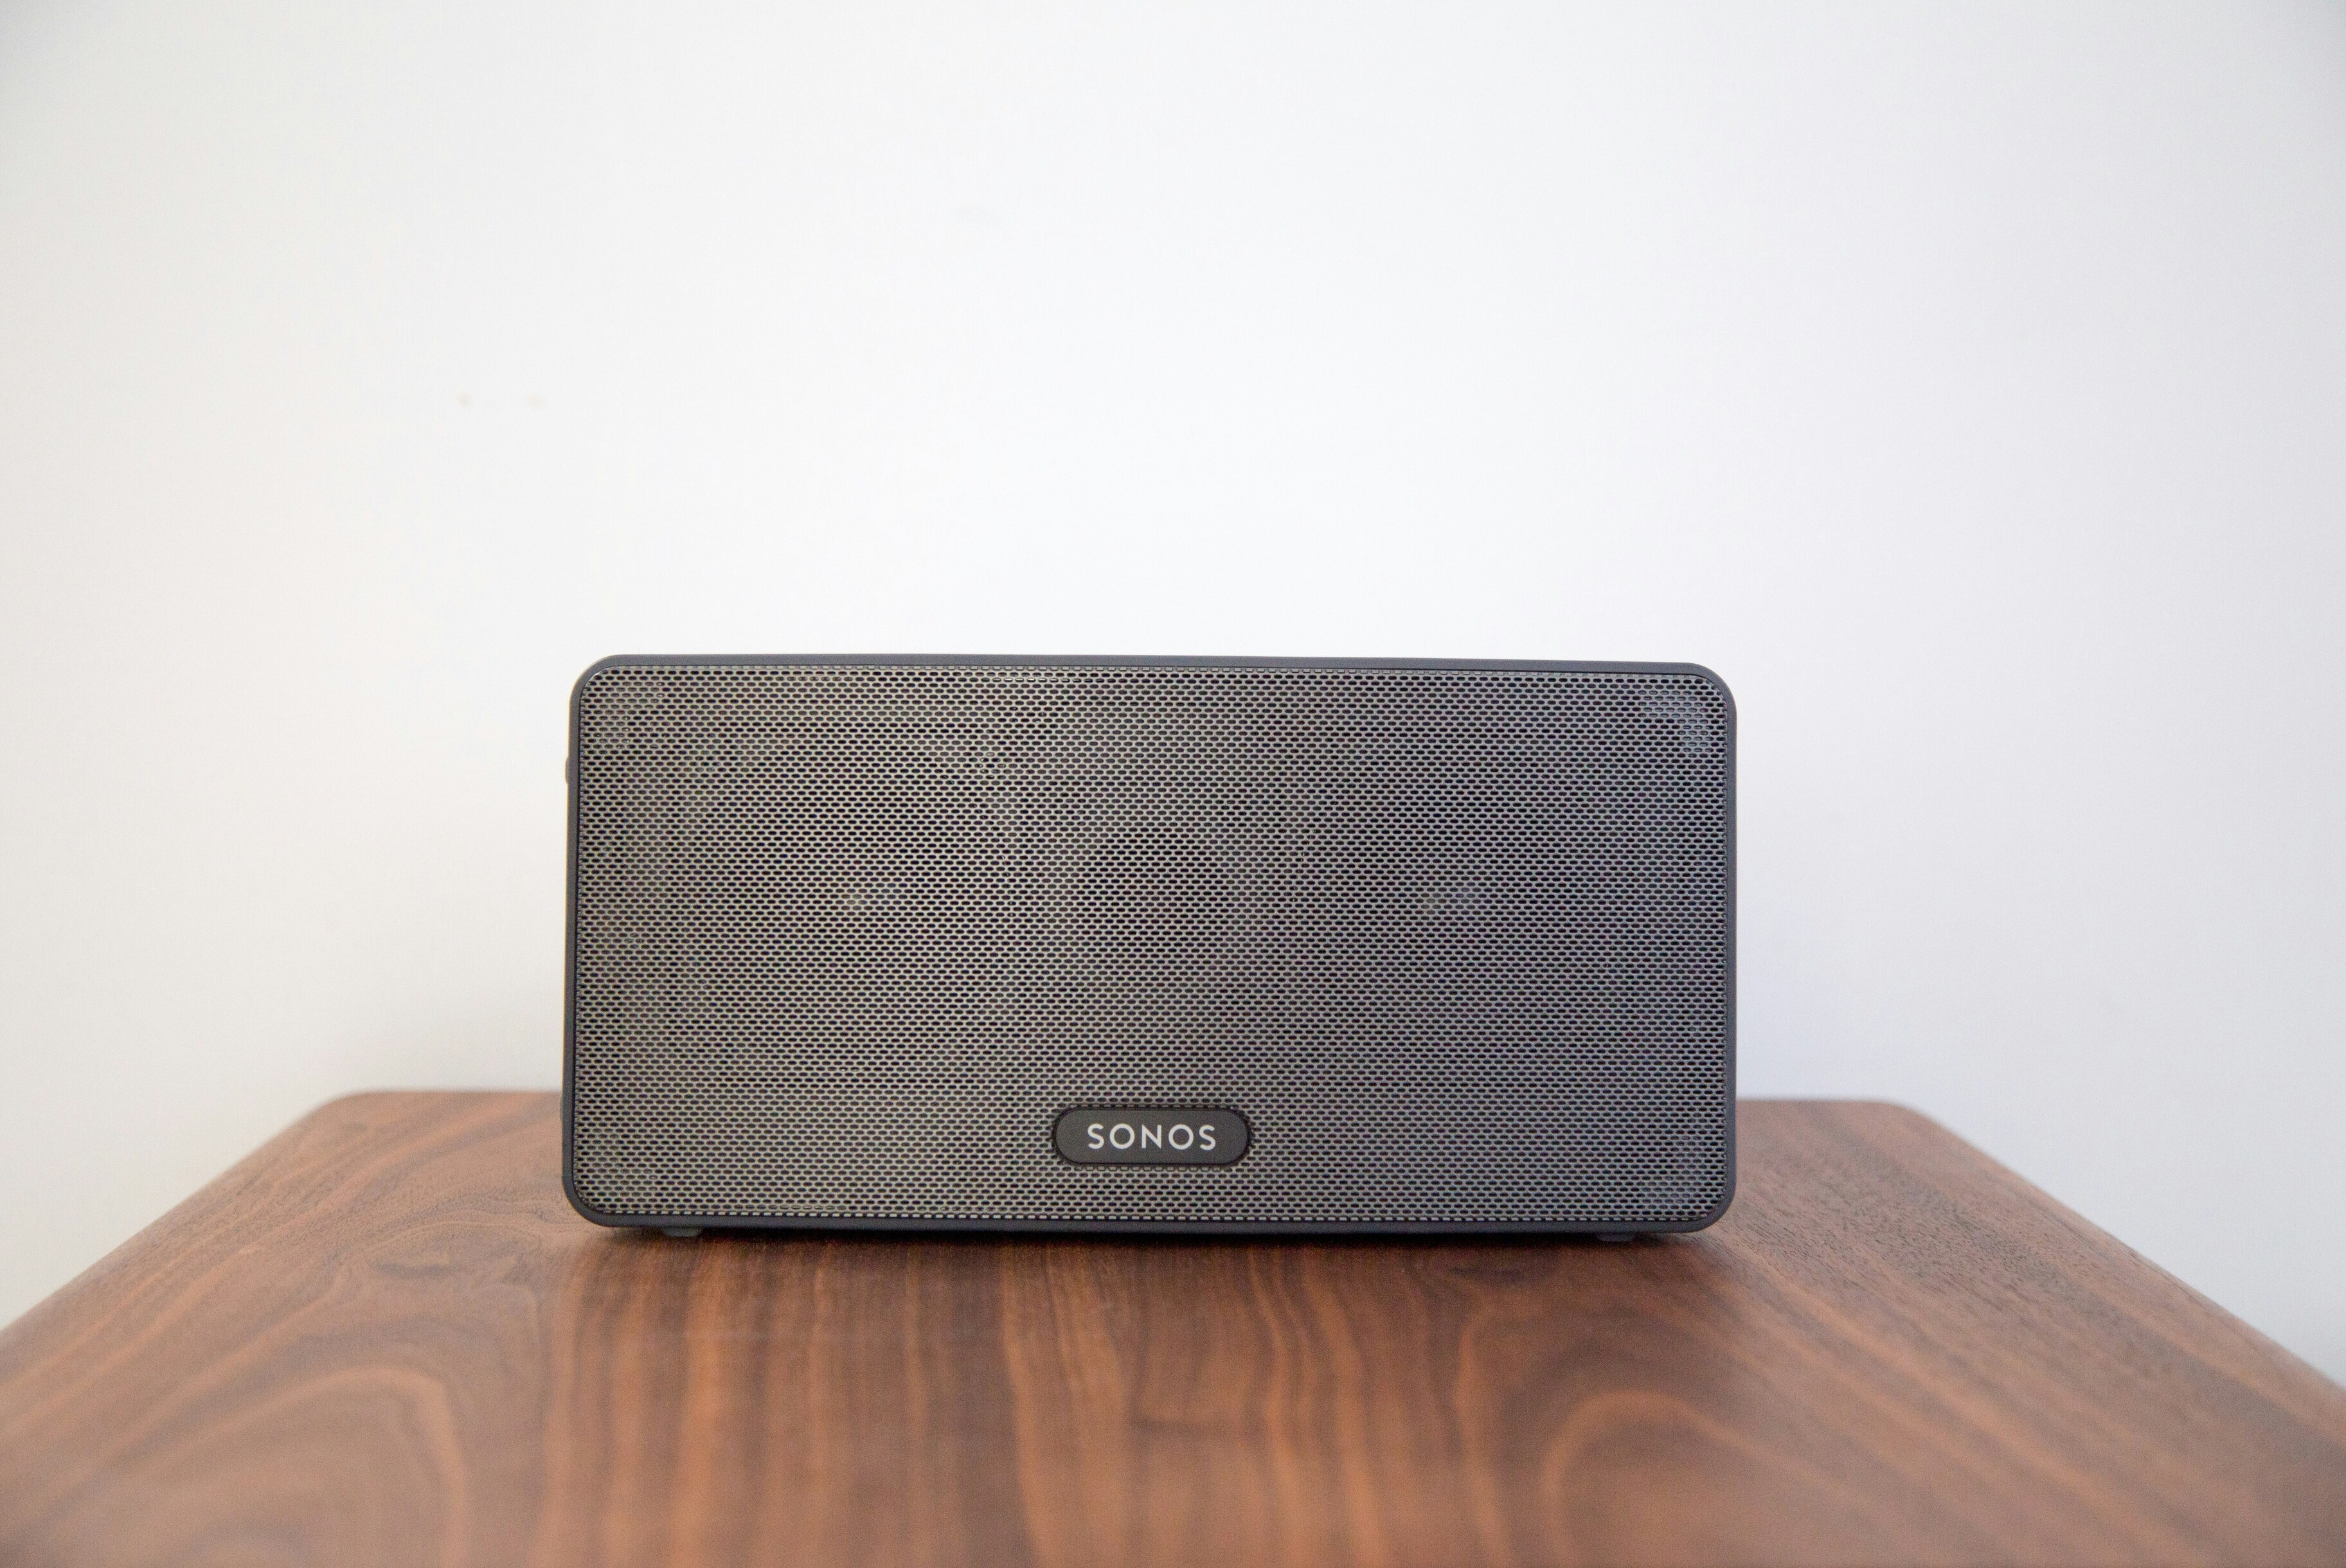 Sonos анонсировал выпуск нового продукта в третьем квартале этого года